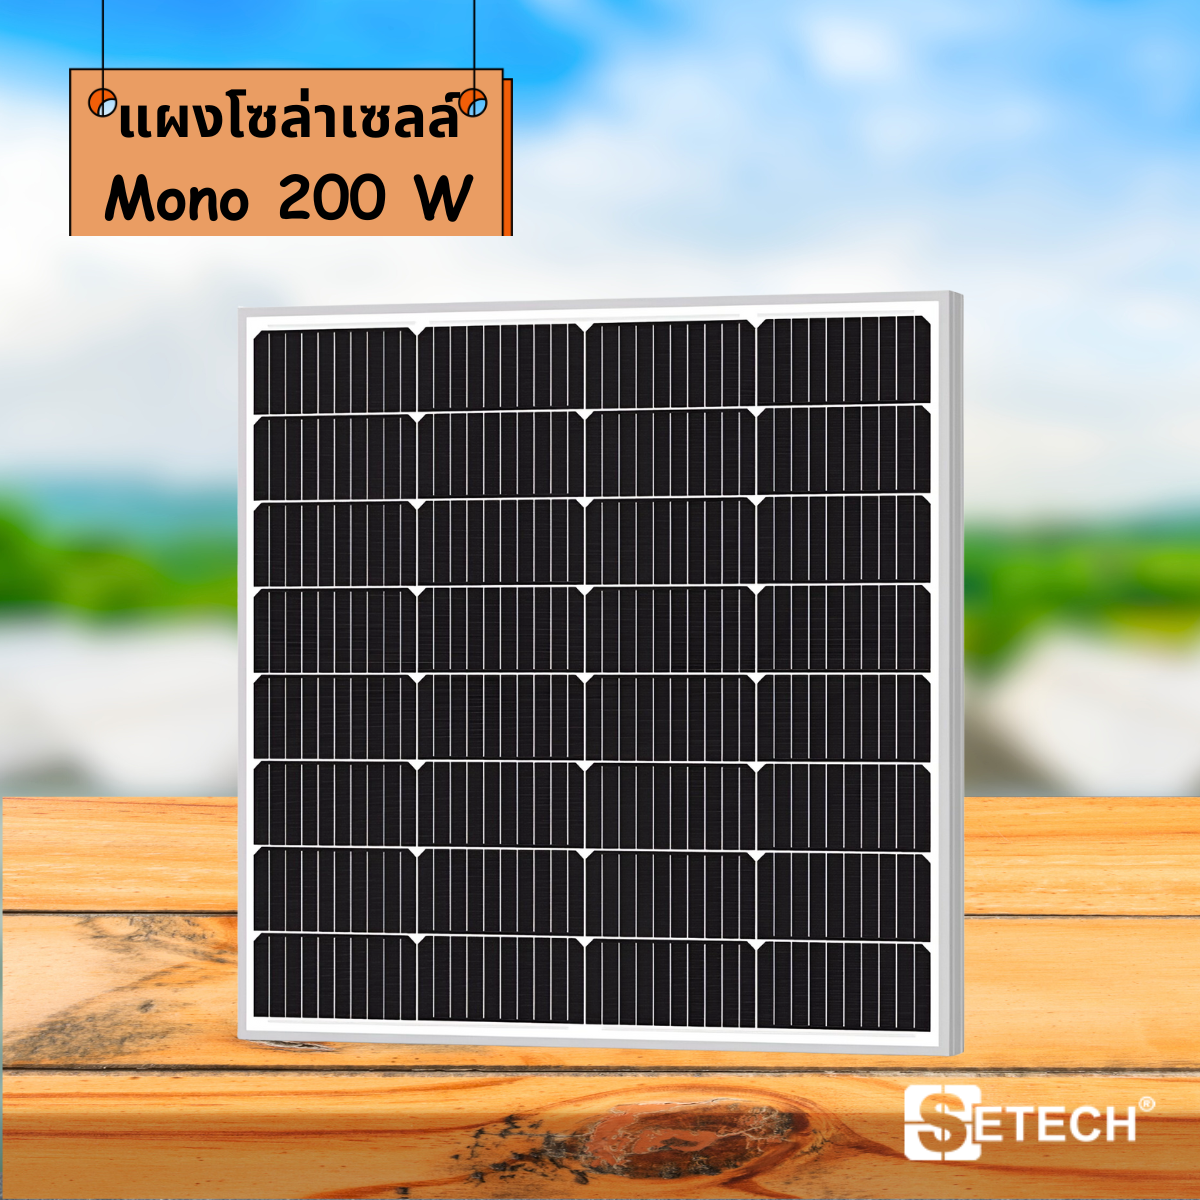 Solar panels Model Mono 200 W SETECH-SC-01 SC-01